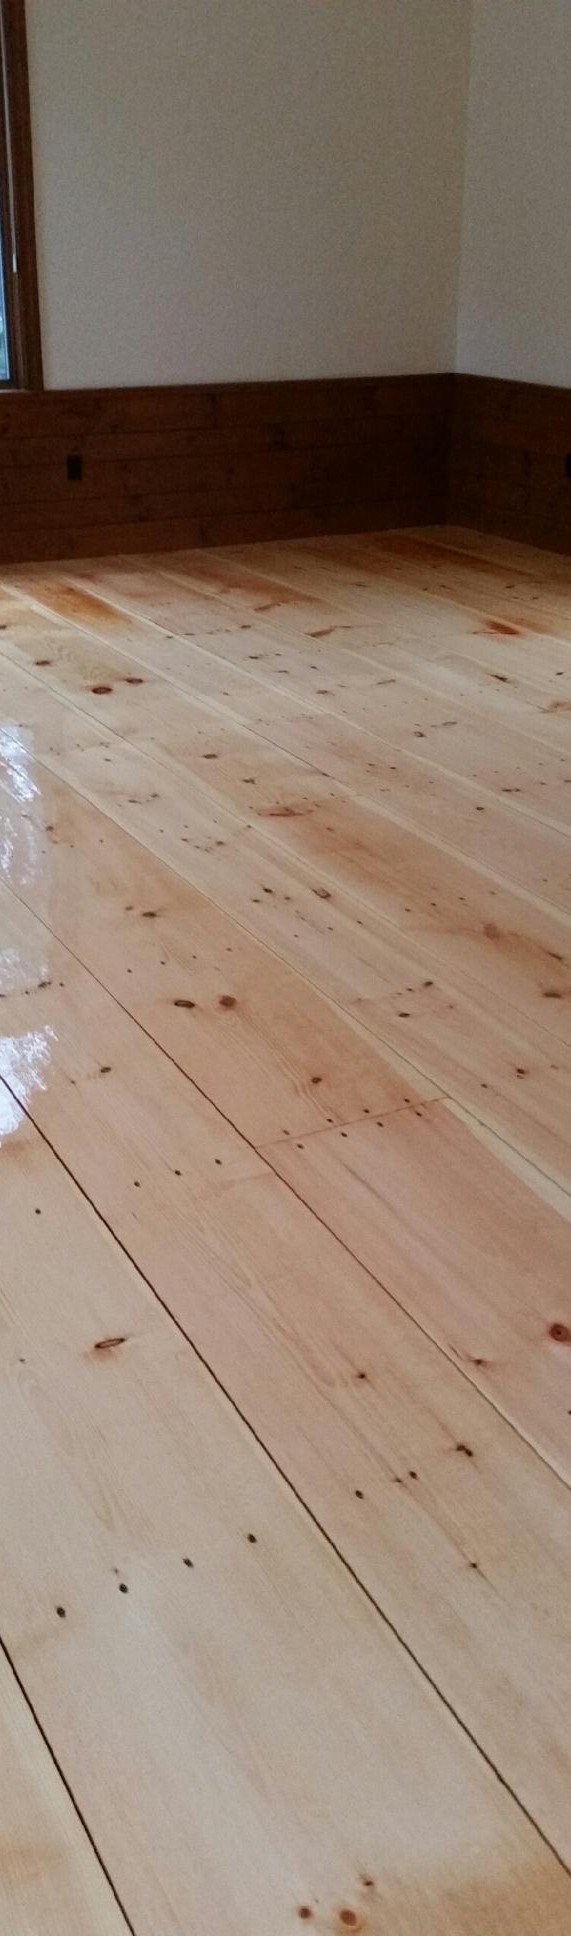 Eastern Pine Hardwood Floors